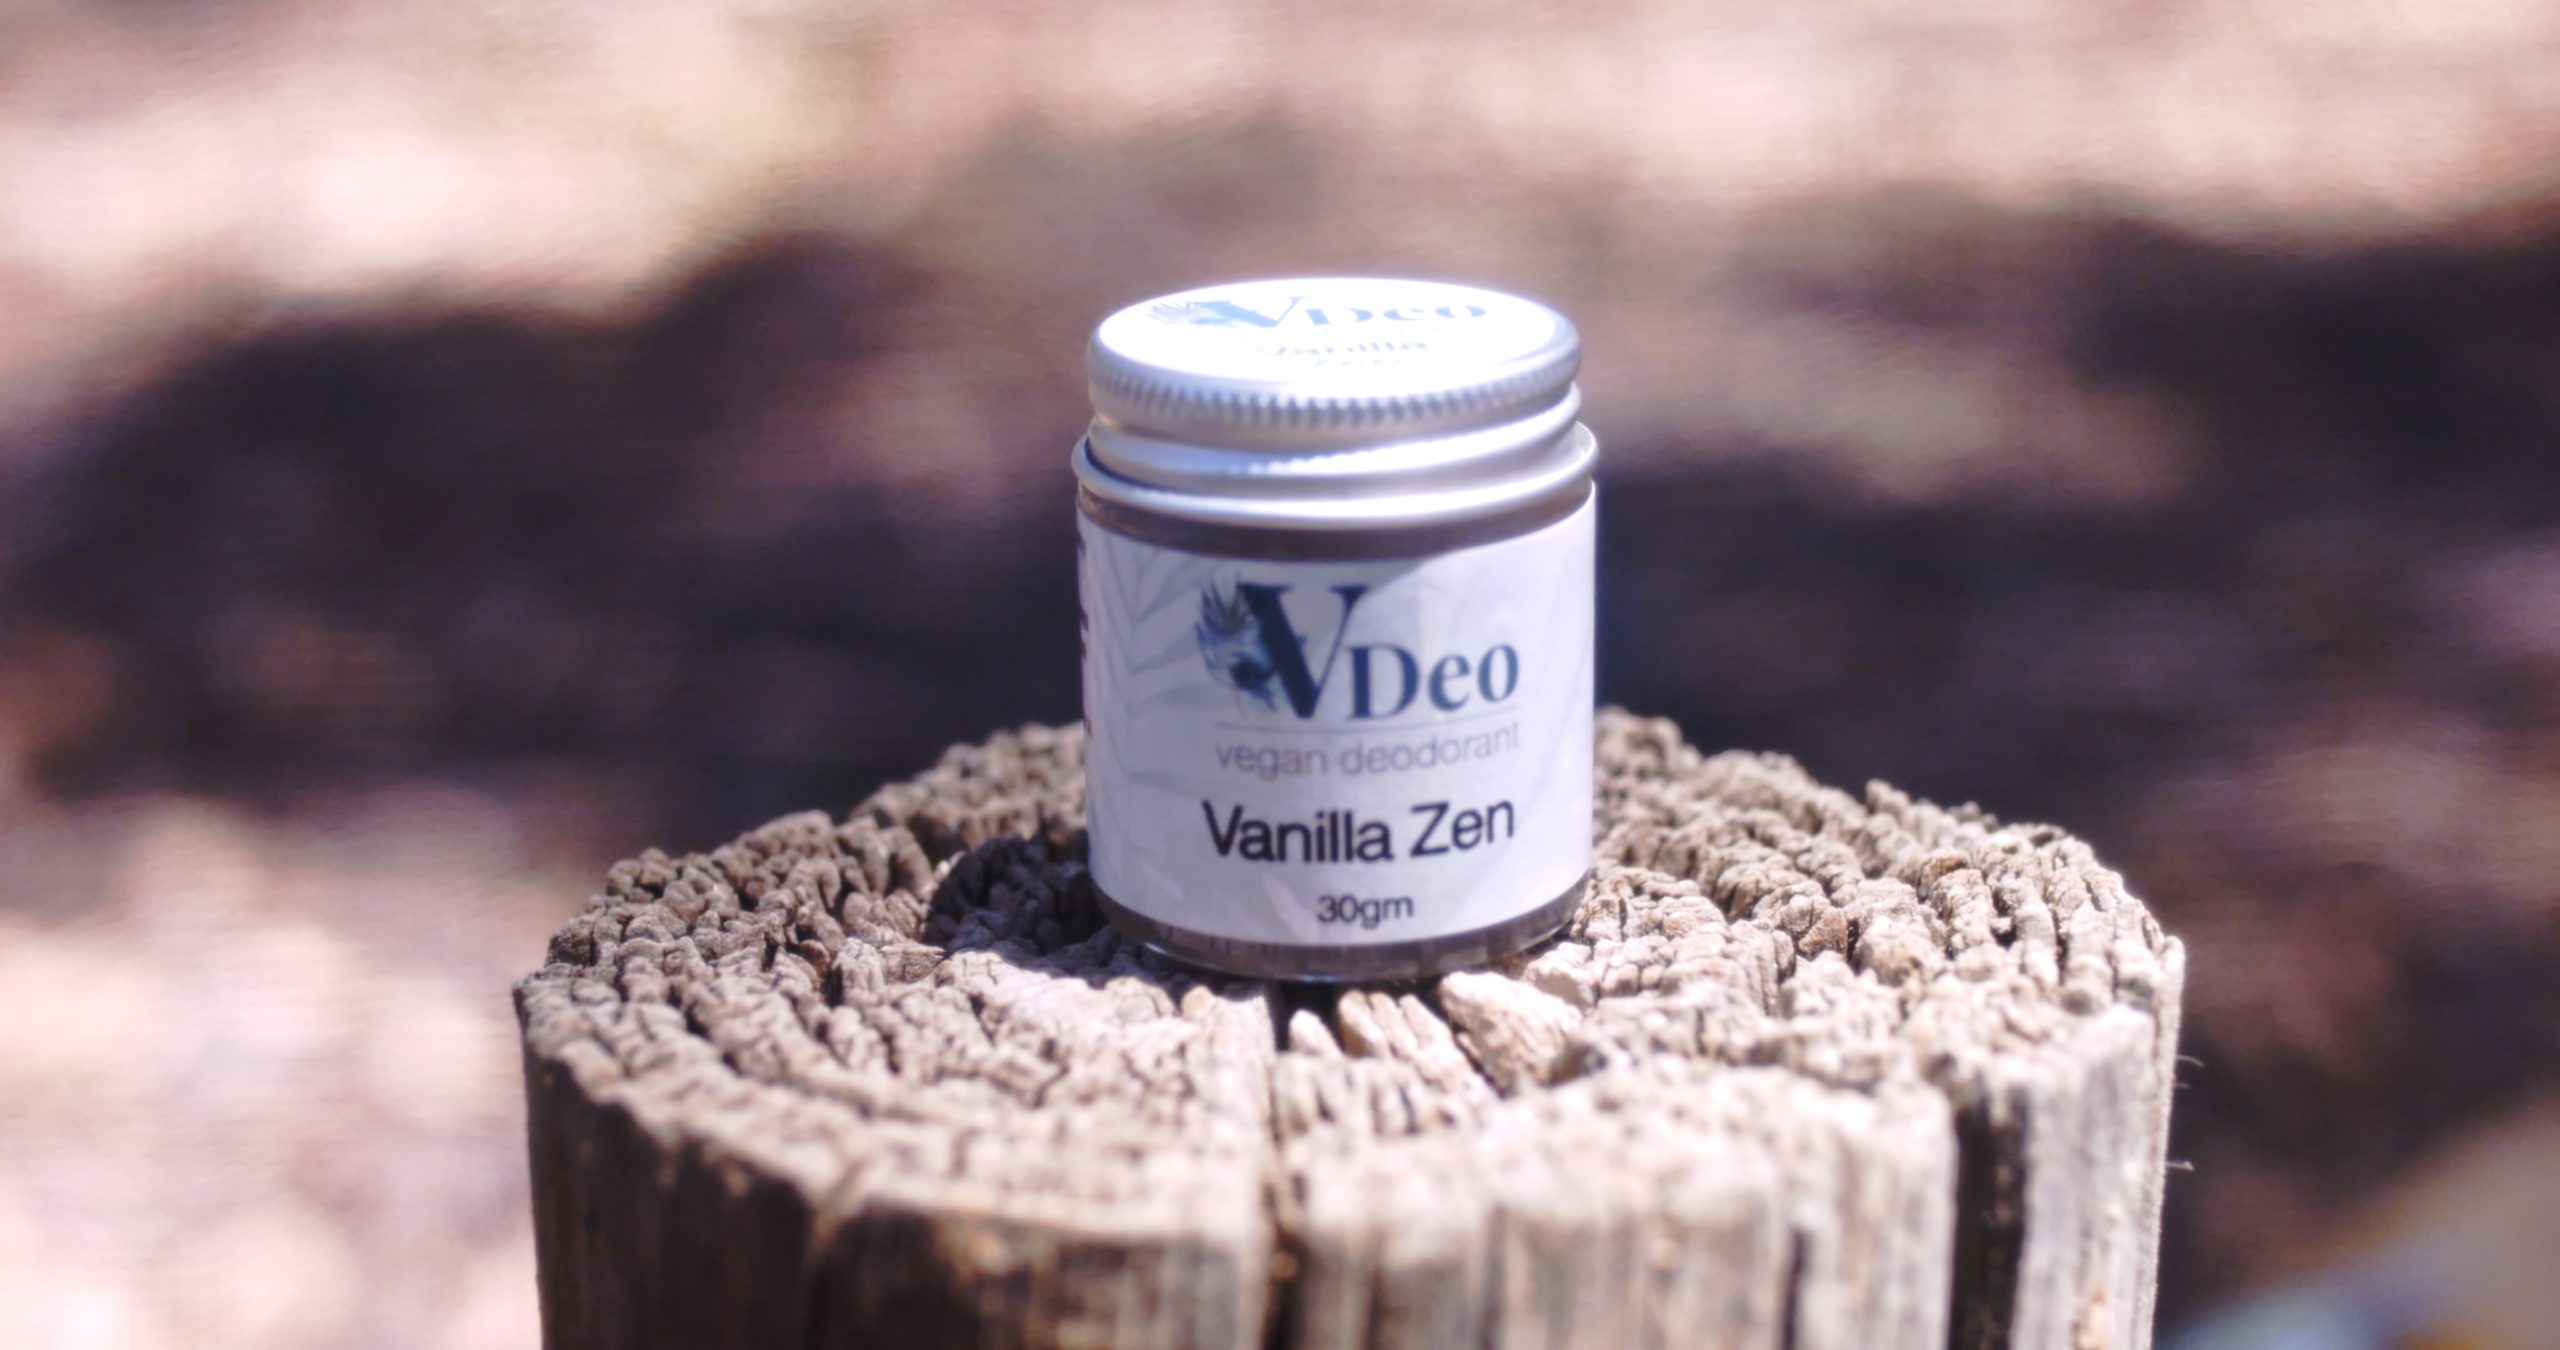 VDeo Vegan Deodorant Vanilla Zen 30g